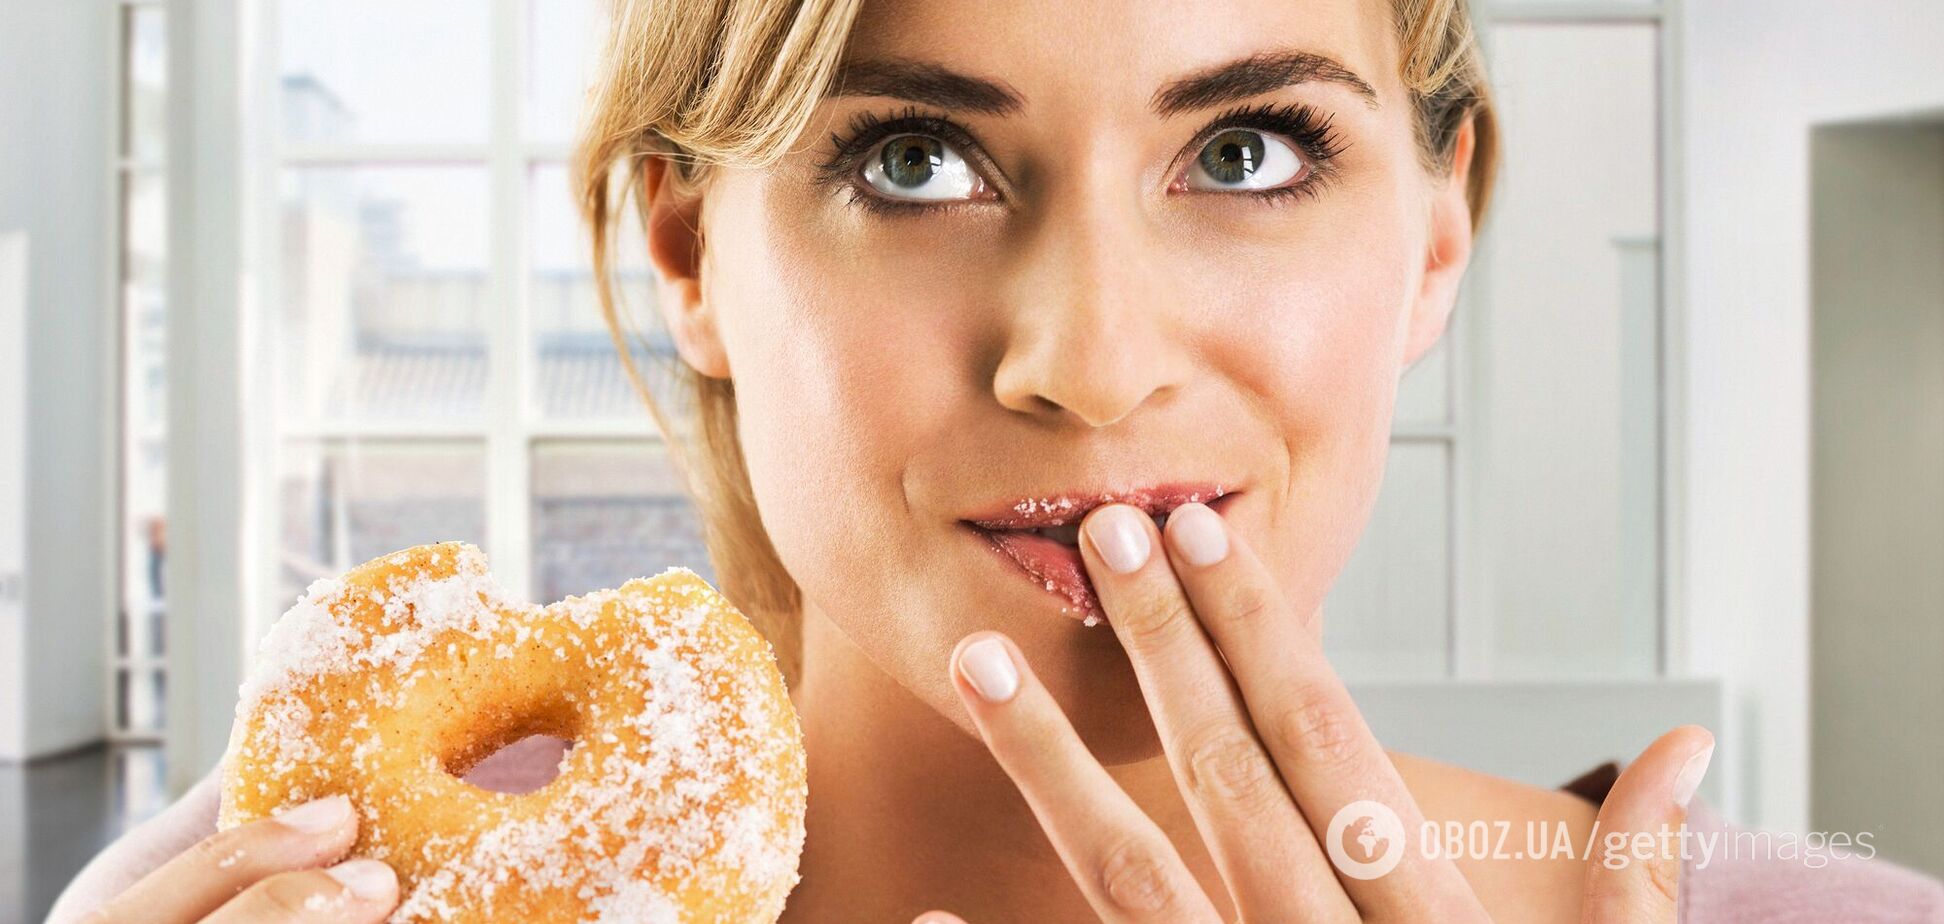 Употребление пончиков может влиять на ухудшение настроения человека